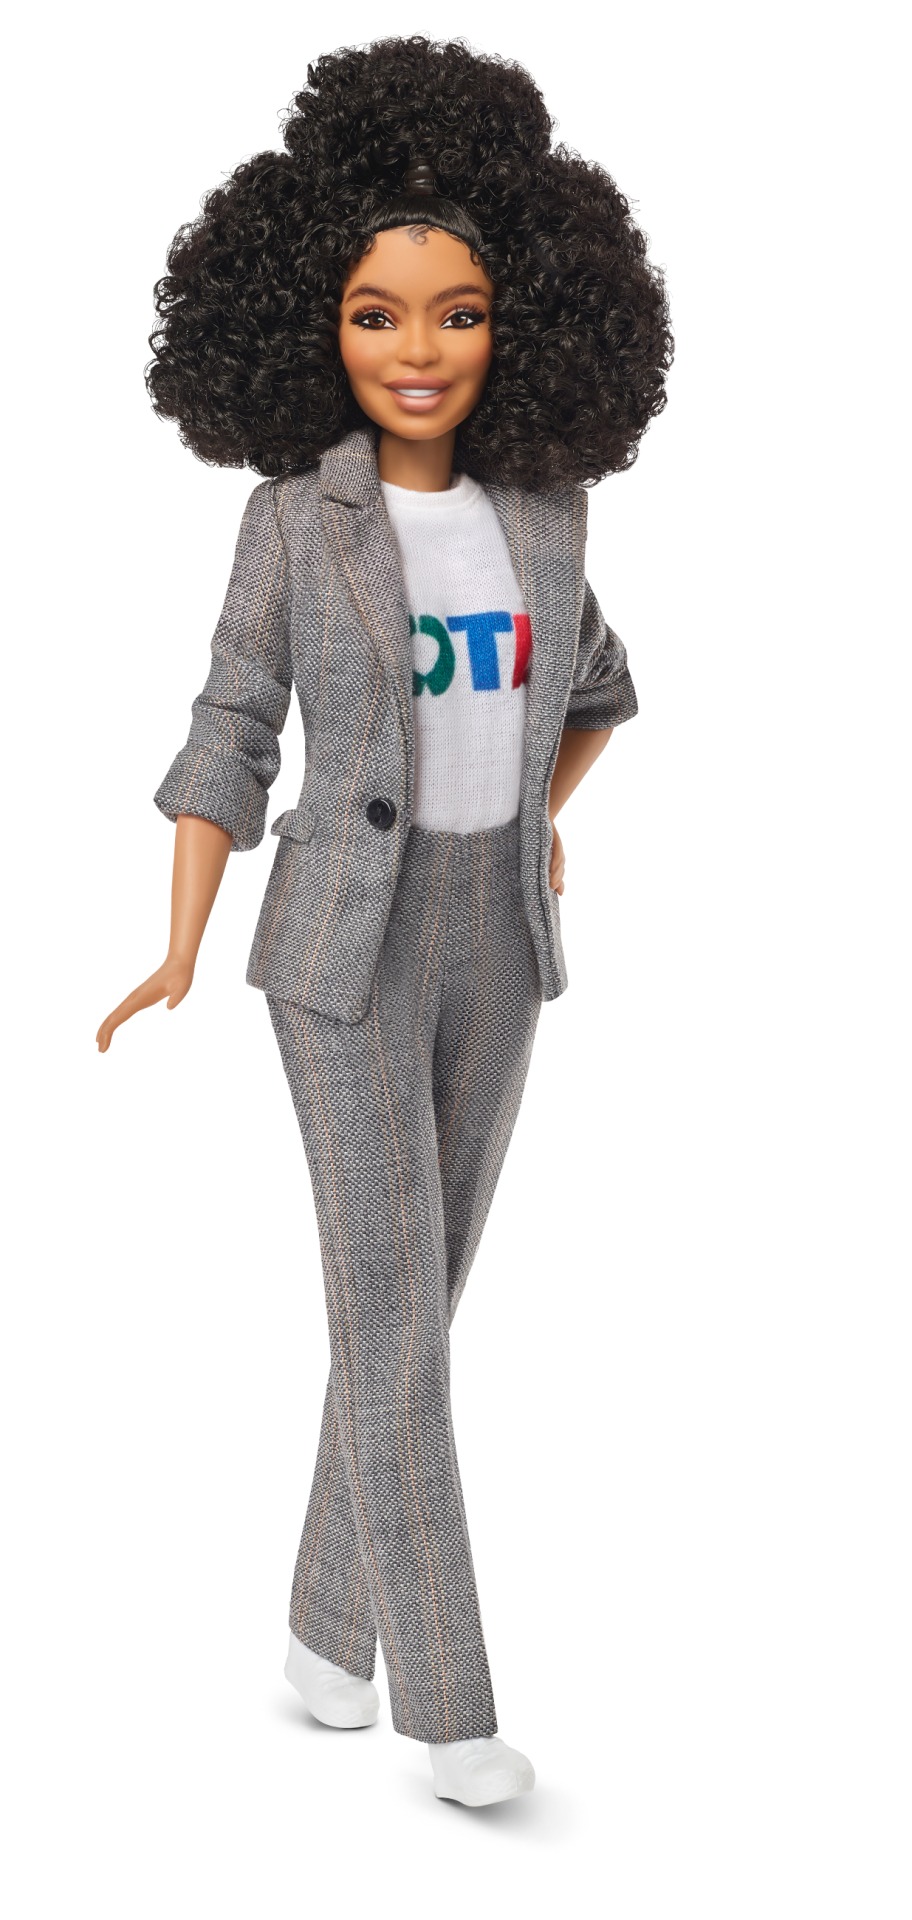 Yara Shahidi Barbie. Image: Mattel.